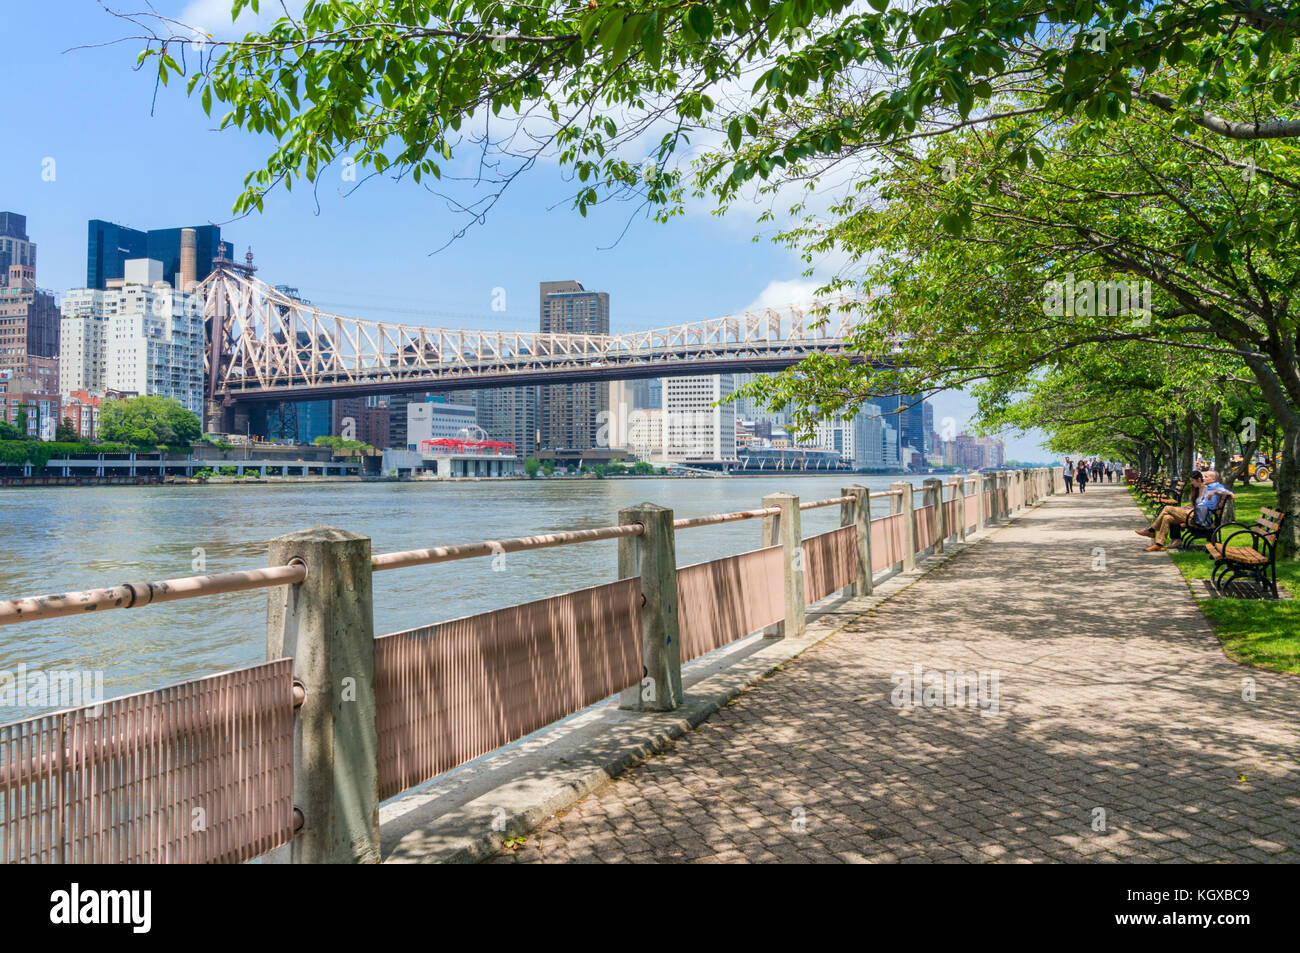 New York USA New York ed Koch Queensborough Bridge über Roosevelt Island und dem East River Queens mit Manhattan New York USA Stockfoto